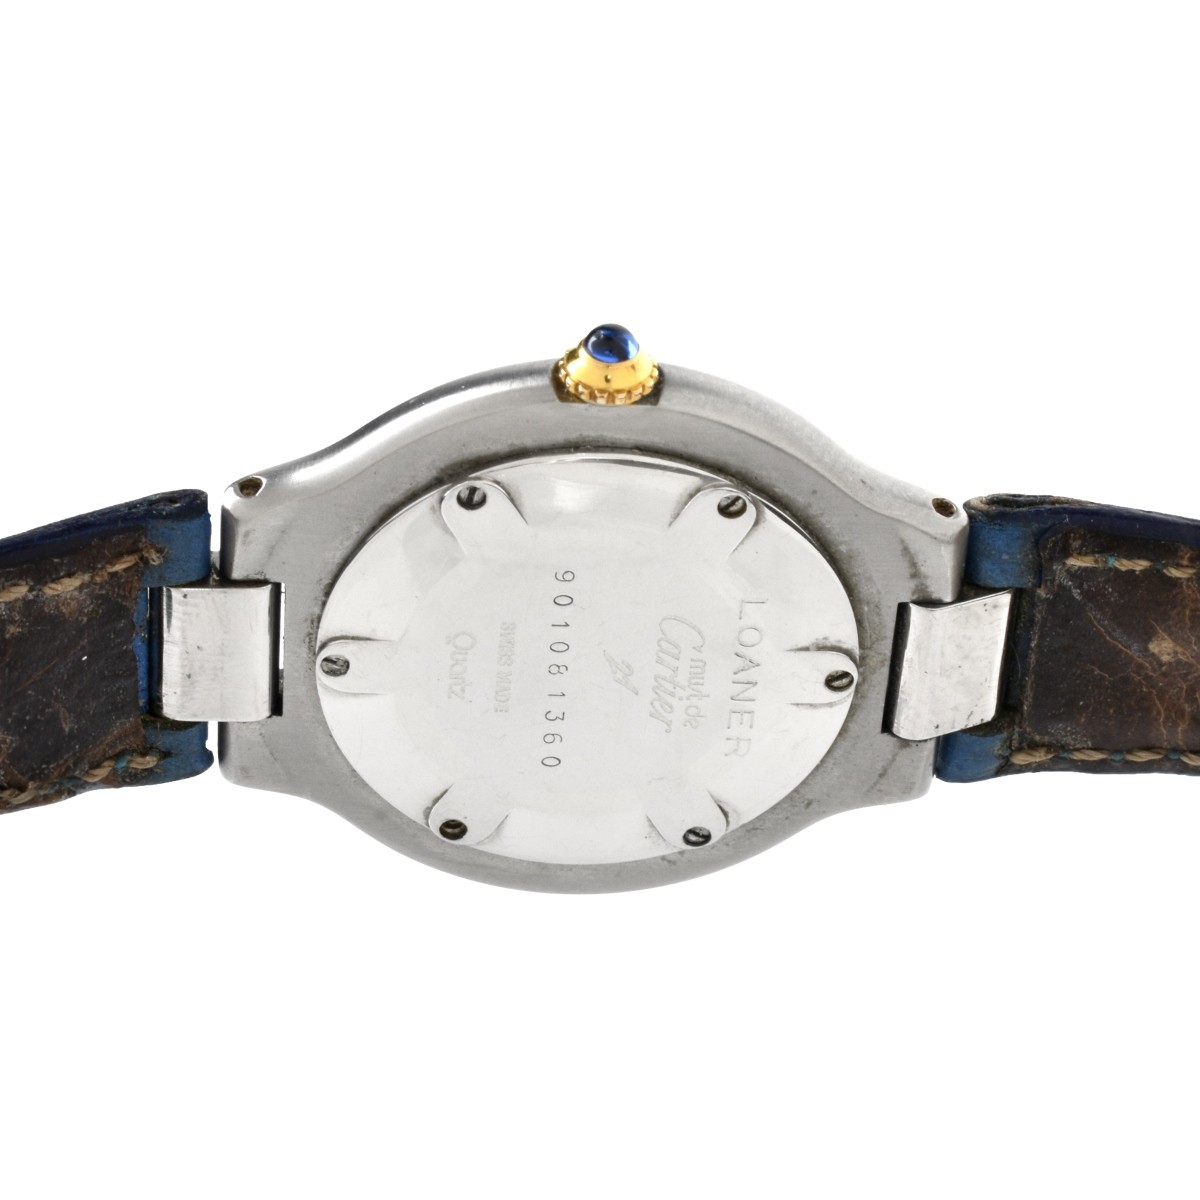 Cartier Must de Cartier Watch